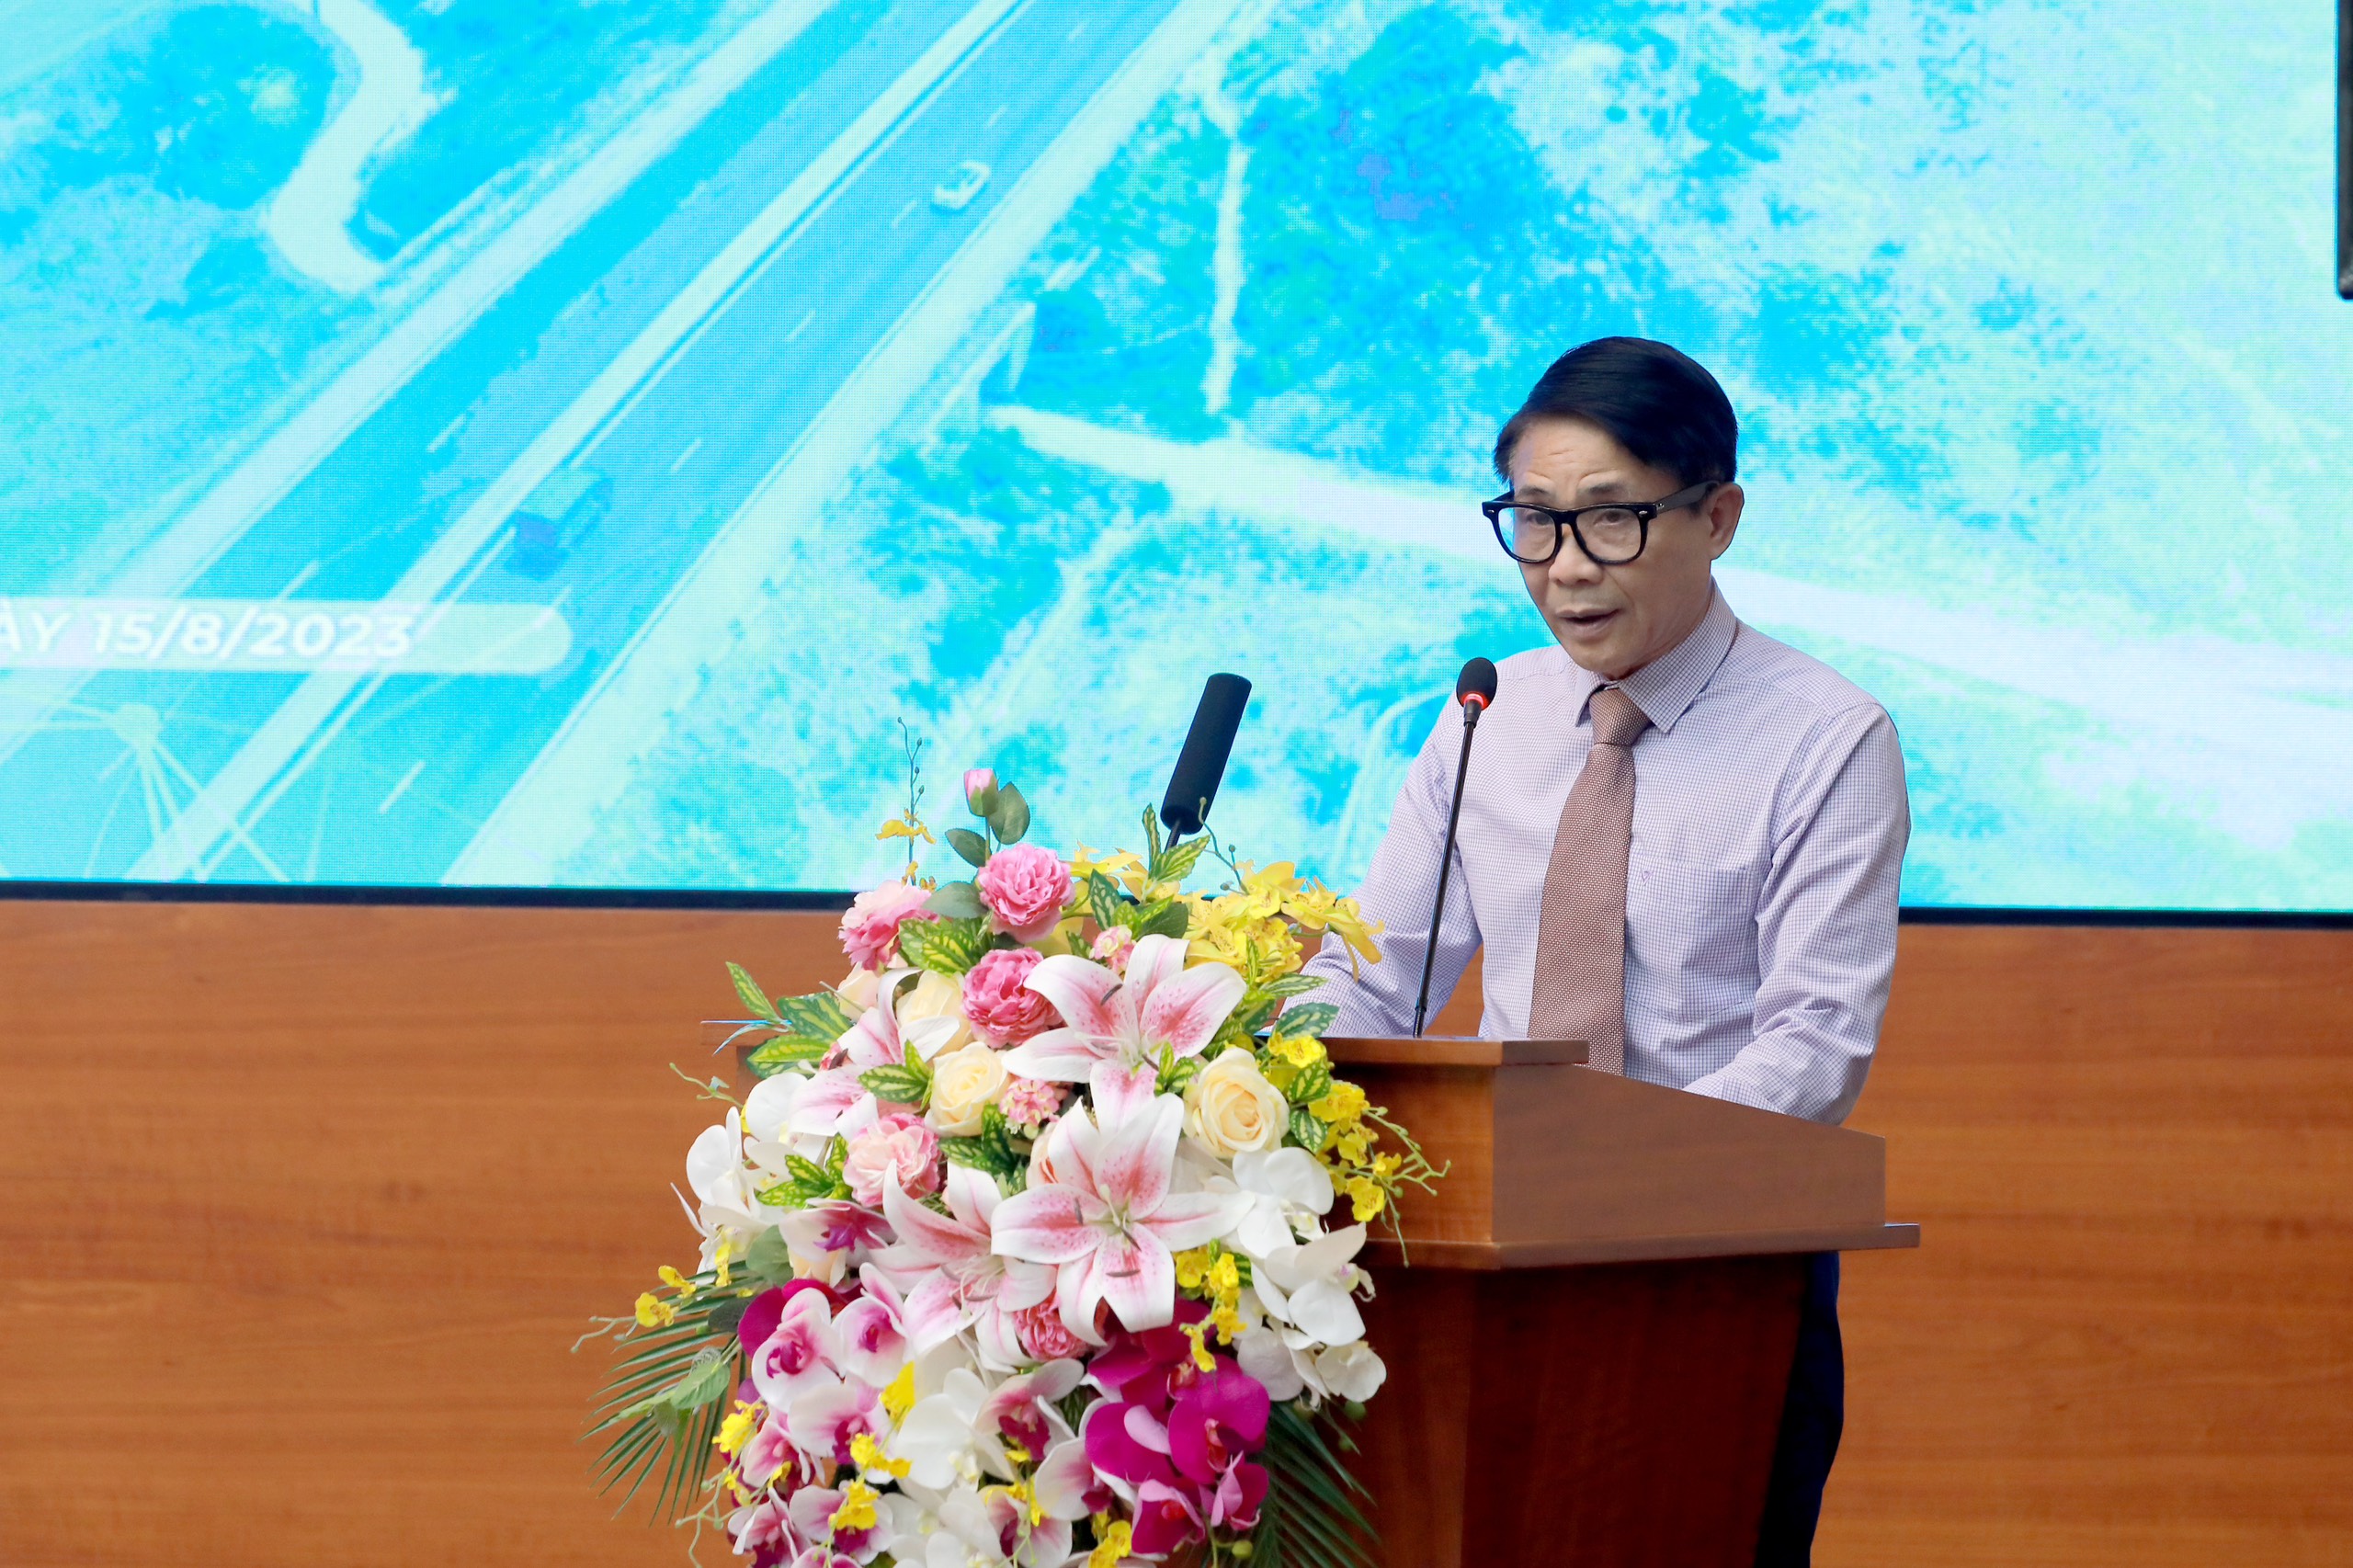 Ông Nguyễn Đức Phú - Phó Hiệu trưởng Trường Cao đẳng Giao thông vận tải đường bộ đánh giá cao năng lực, kinh nghiệm của Tập đoàn Đèo Cả trong lĩnh vực đầu tư, xây dựng, đặc biệt là quản lý, vận hành các công trình giao thông đường bộ